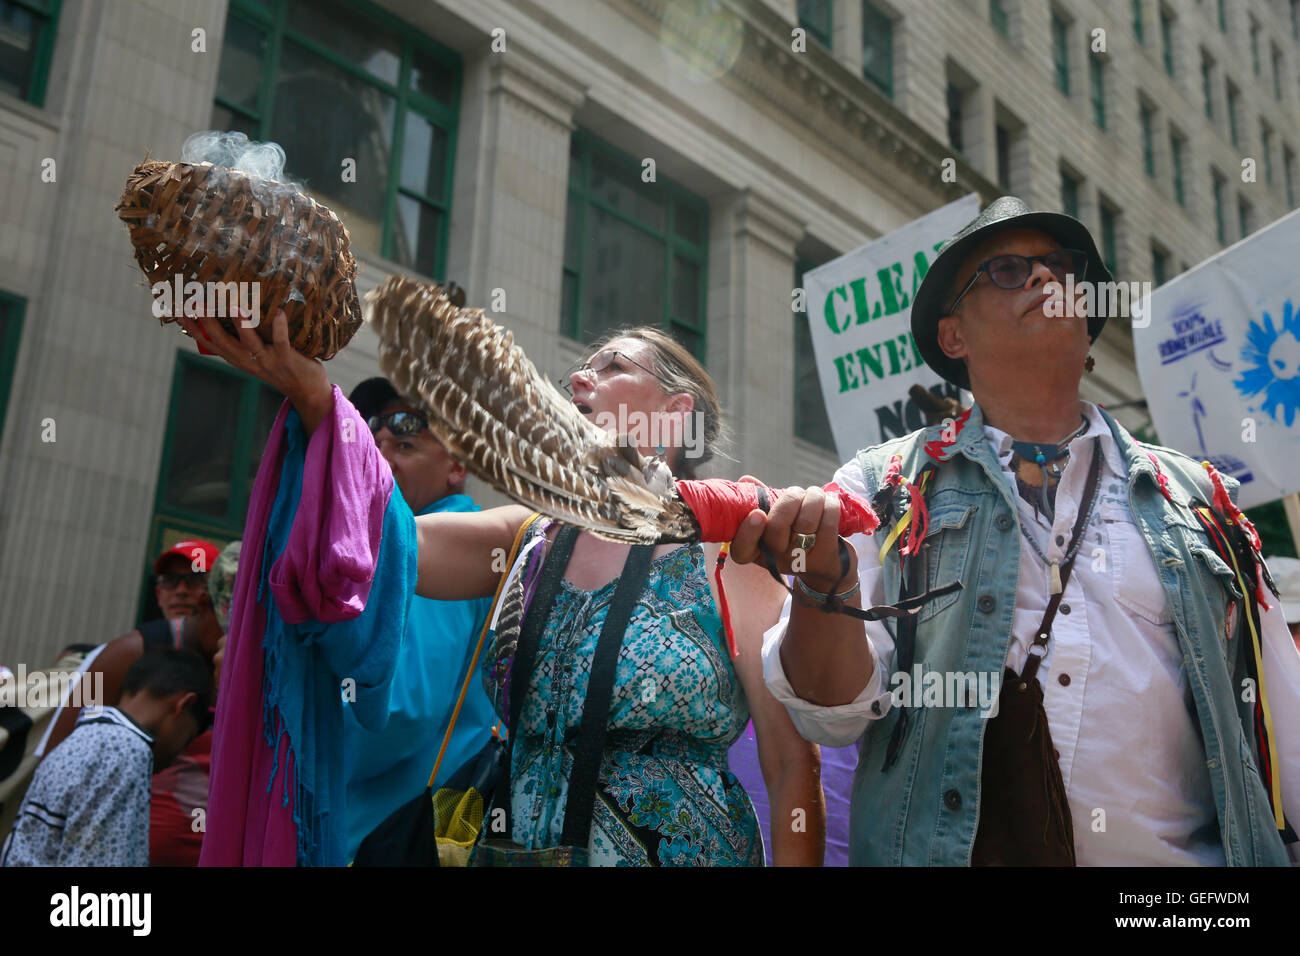 07242016 - Philadelphia, Pennsylvania, los manifestantes demostrar por diversas causas ambientales durante la marcha para limpiar Engery. La Convención Nacional del Partido Demócrata que comienza el lunes. (Jeremy Hogan) Foto de stock